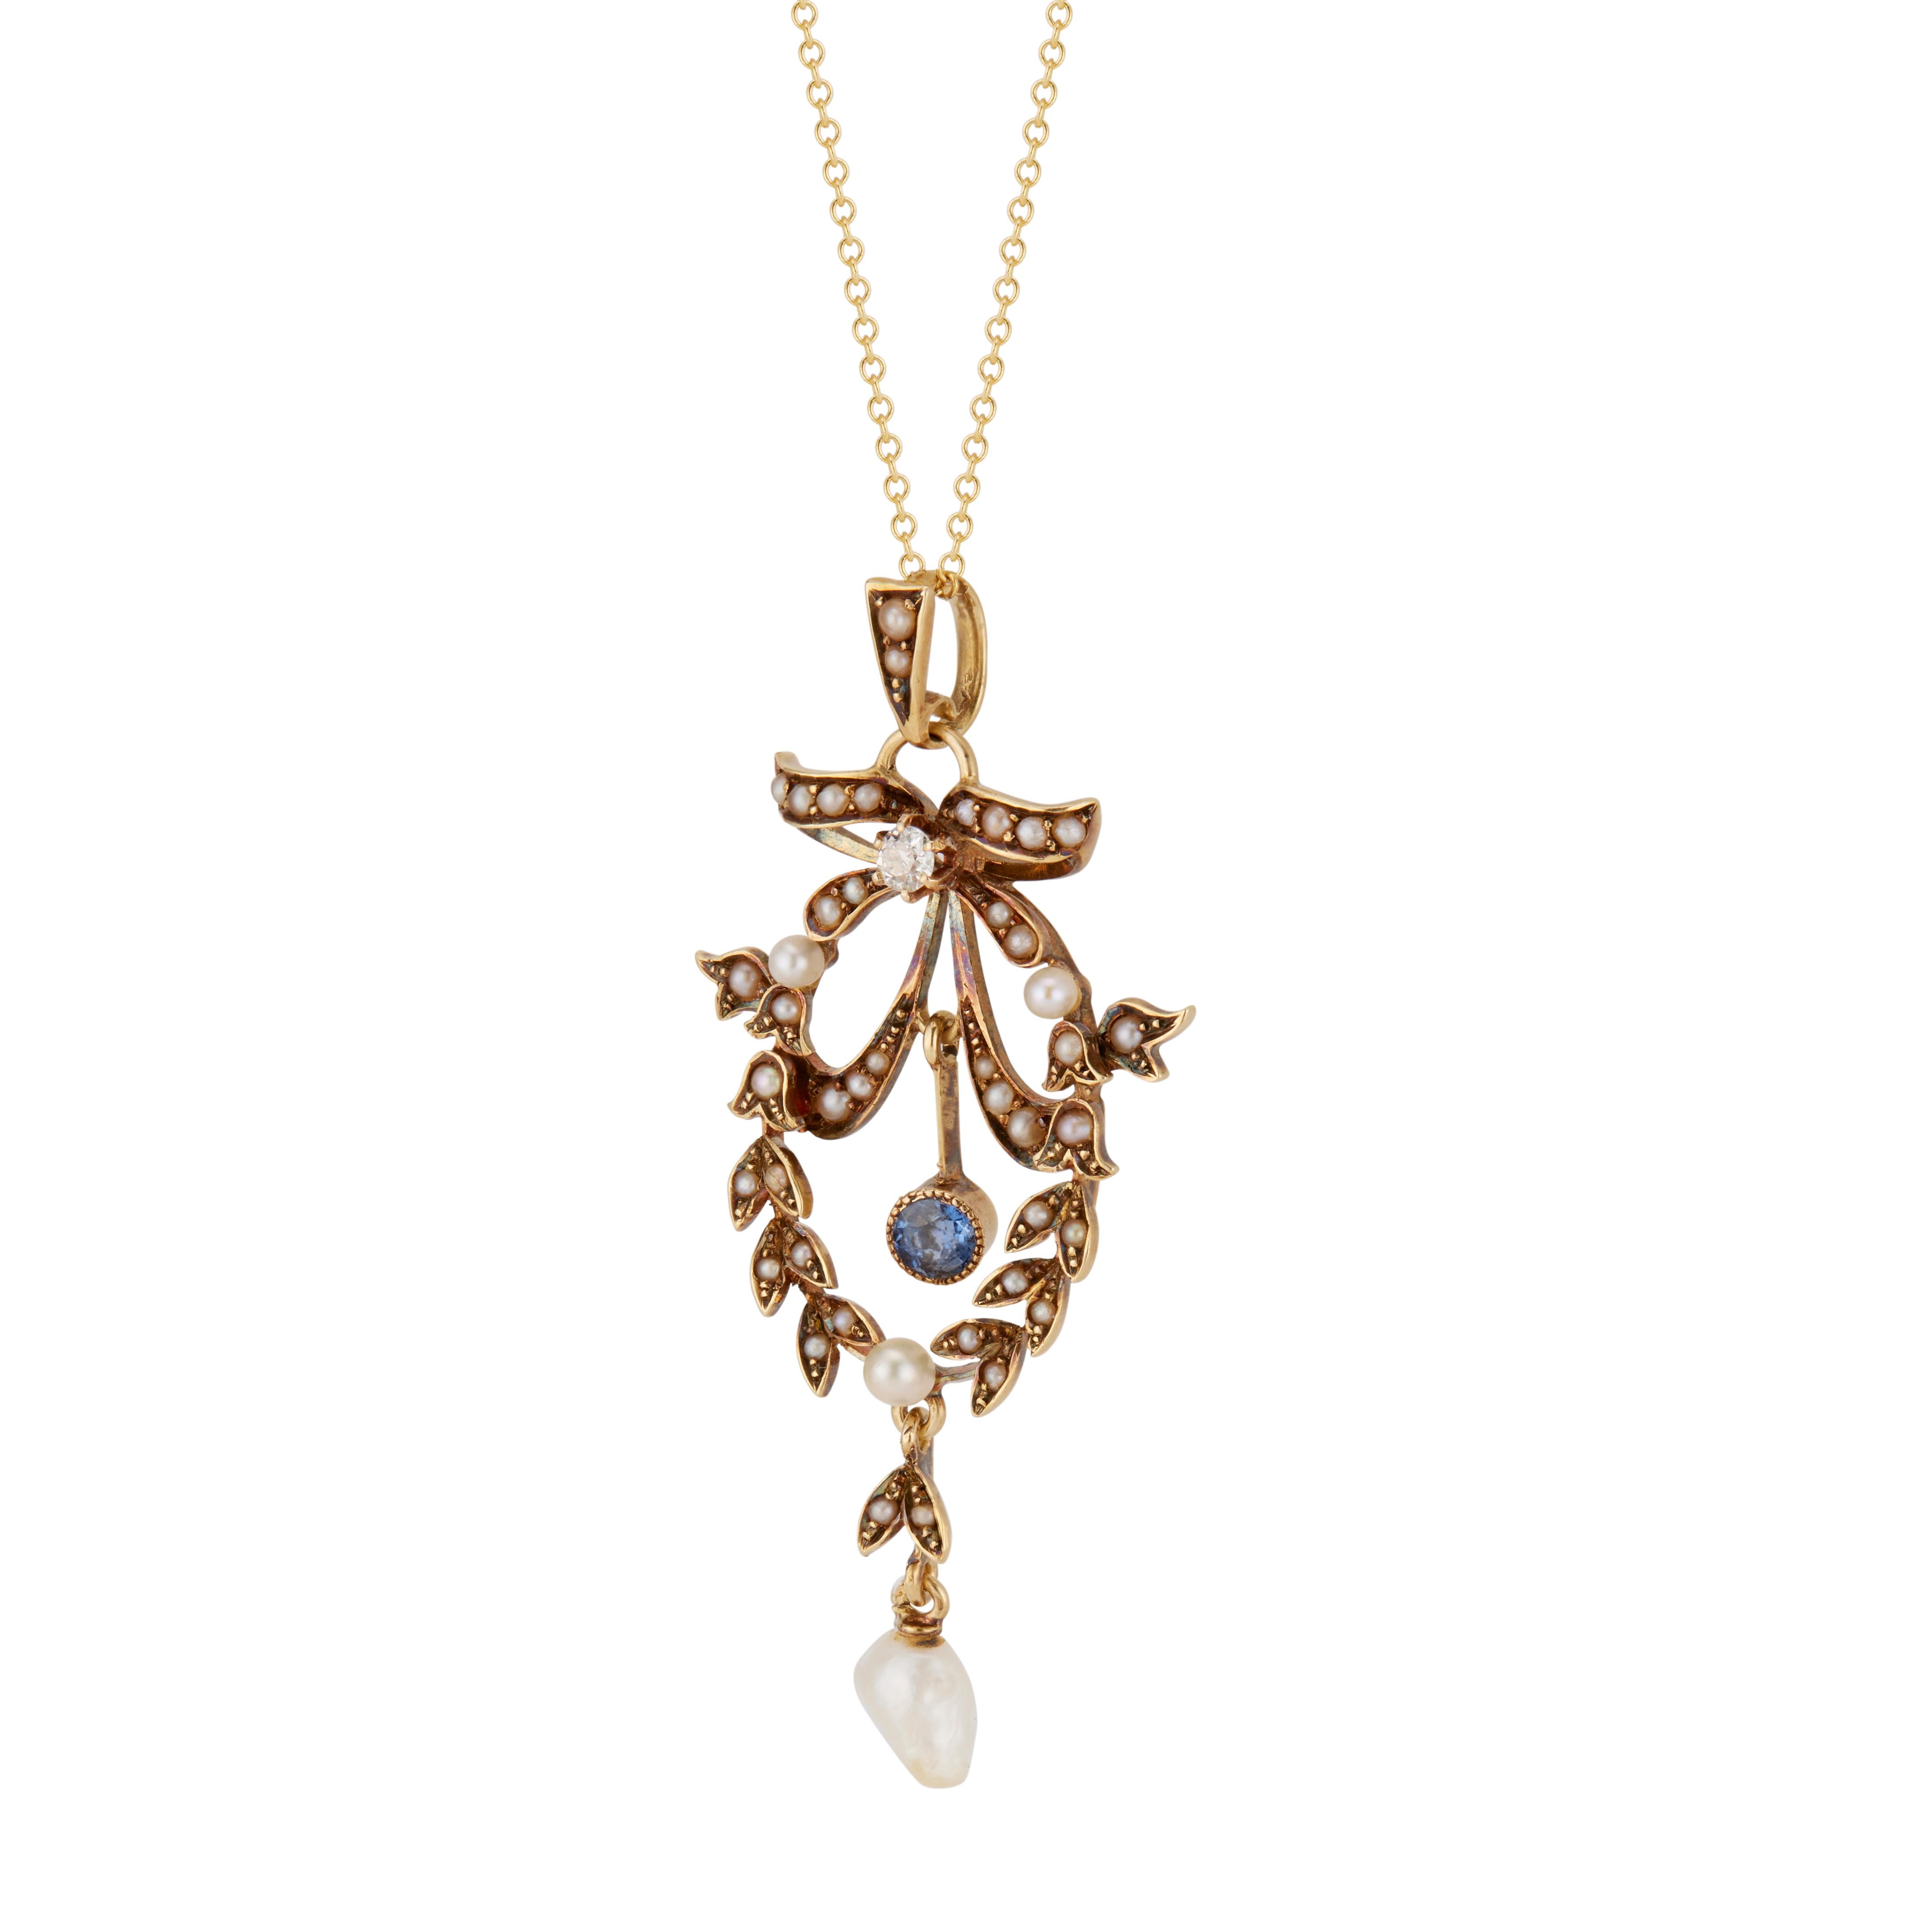 Original pendentif victorien des années 1880 à motif de nœuds et de couronnes, serti de 43 perles naturelles non traitées, d'un diamant de taille ancienne et d'un saphir naturel. Patine naturelle. Chaîne de 18 pouces. 

43 perles de rocaille grises